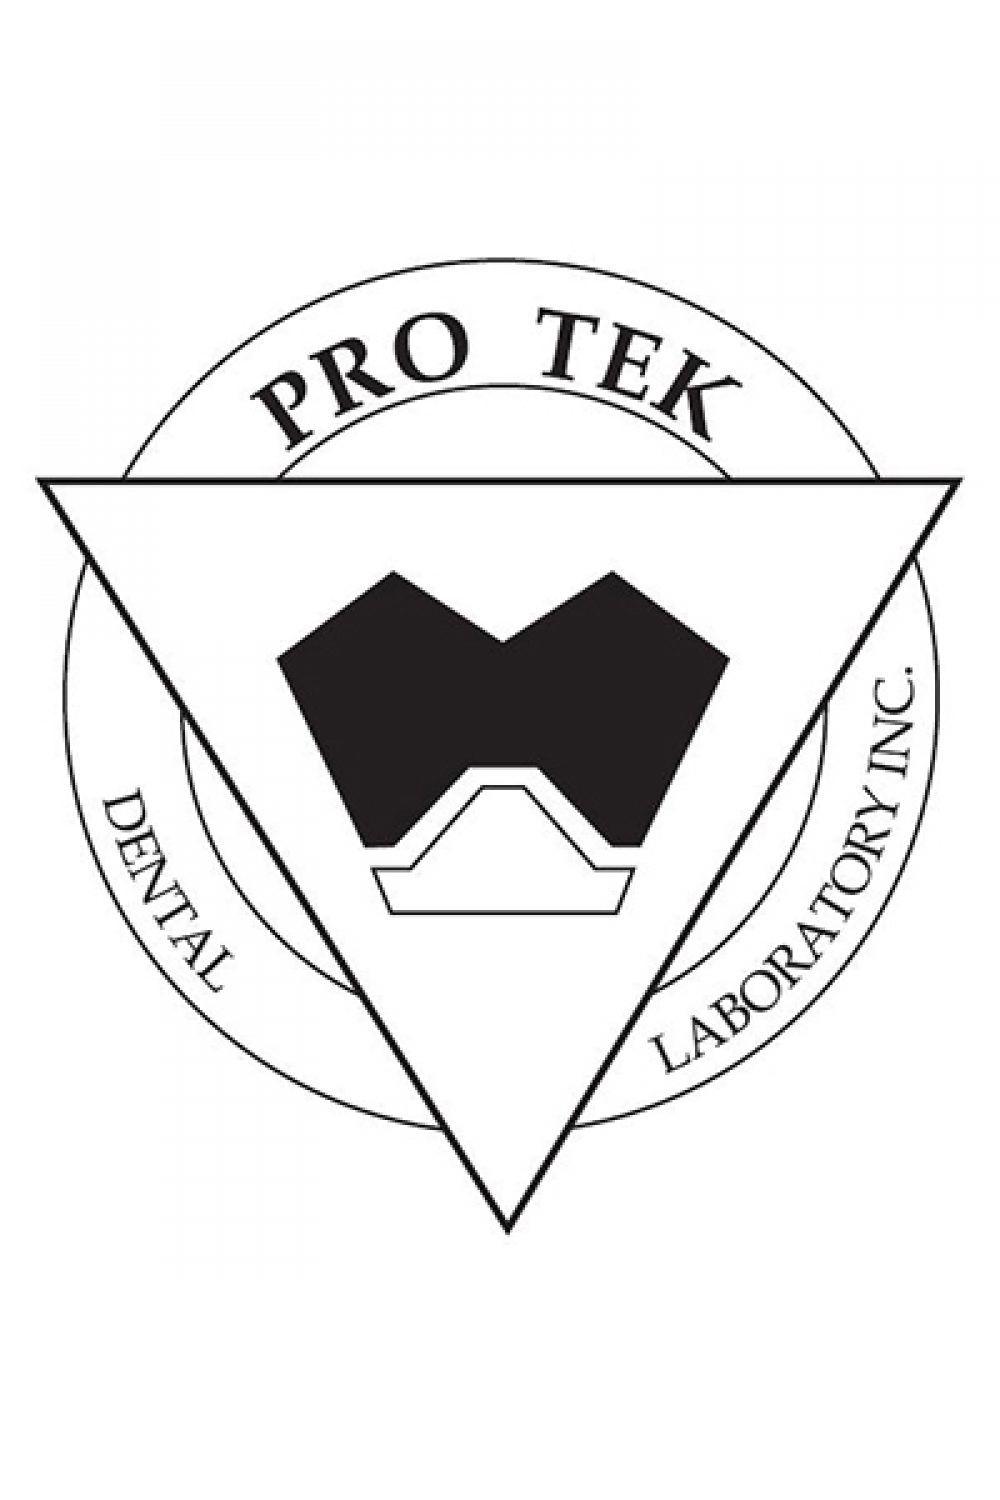 Tek Pro Logo - Pro Tek Dental Laboratory Inc